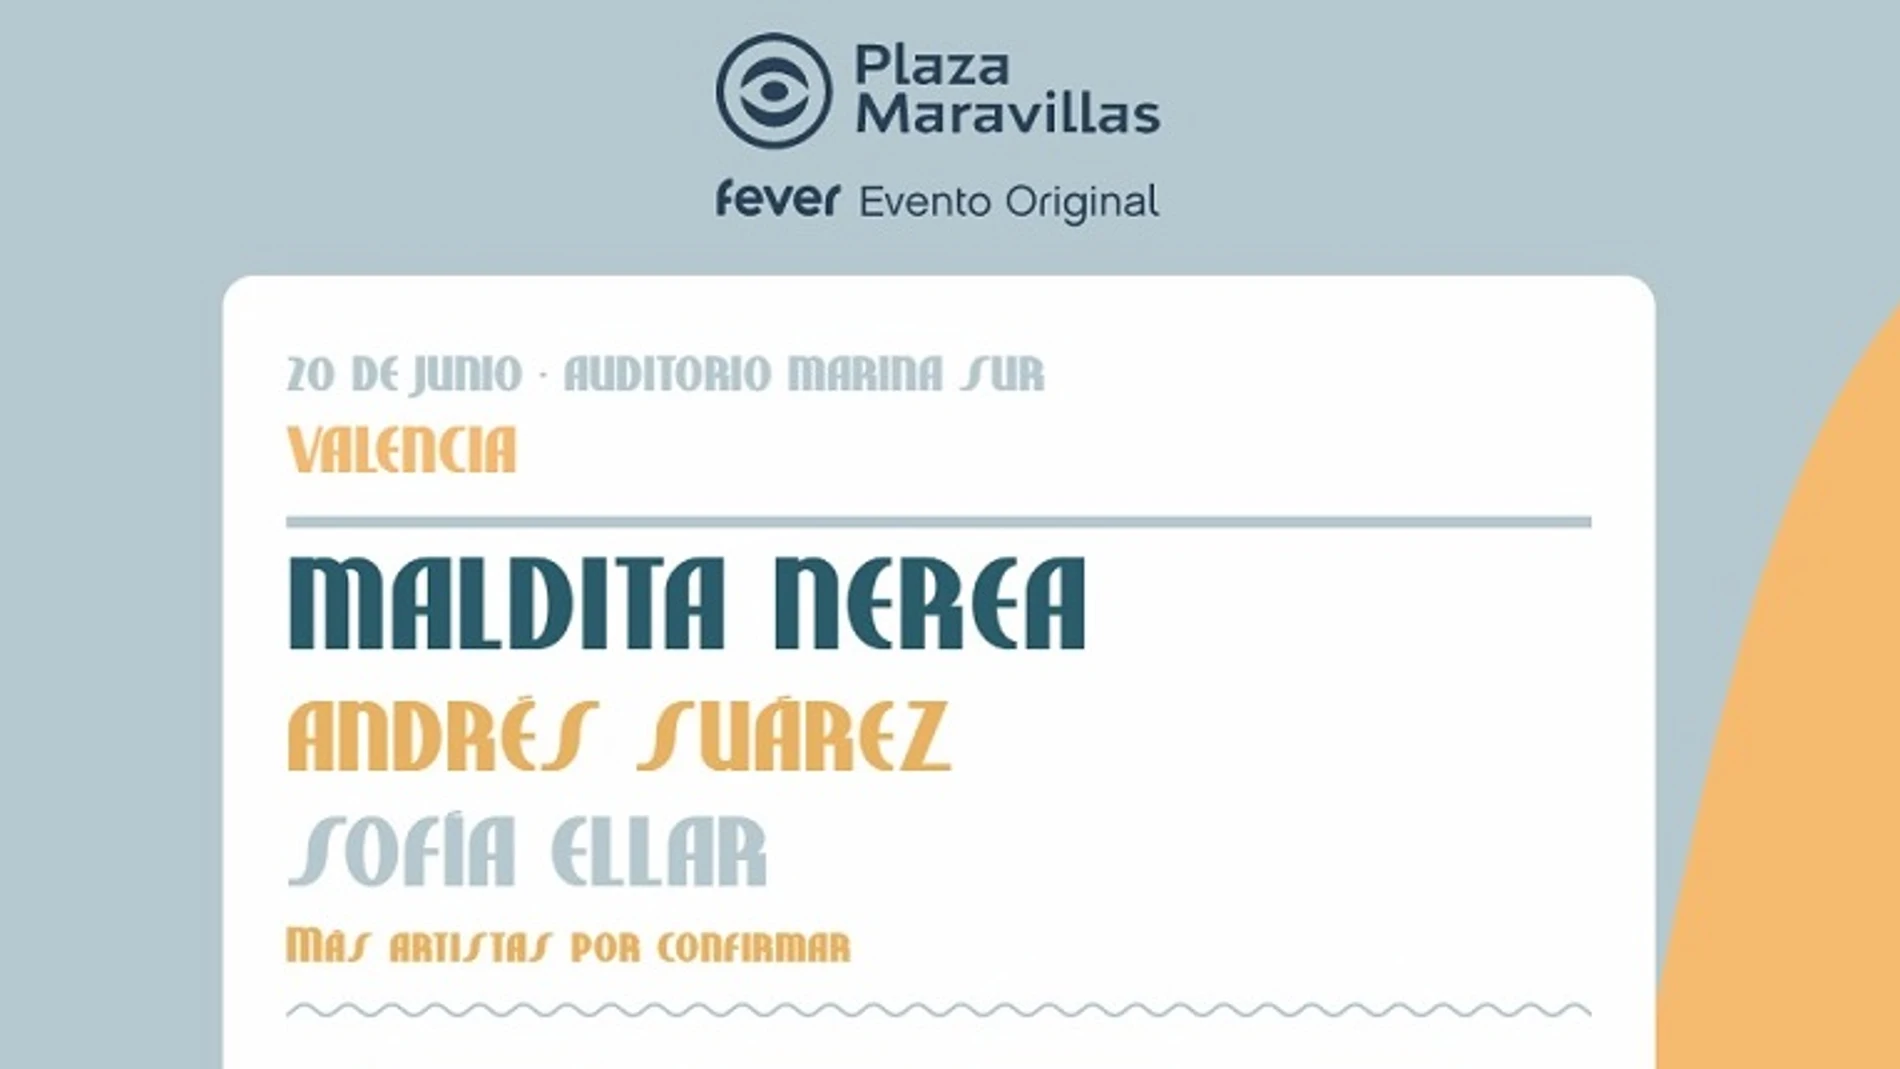 Plaza Maravillas, el evento de FEVER en la Marina Sur de Valencia